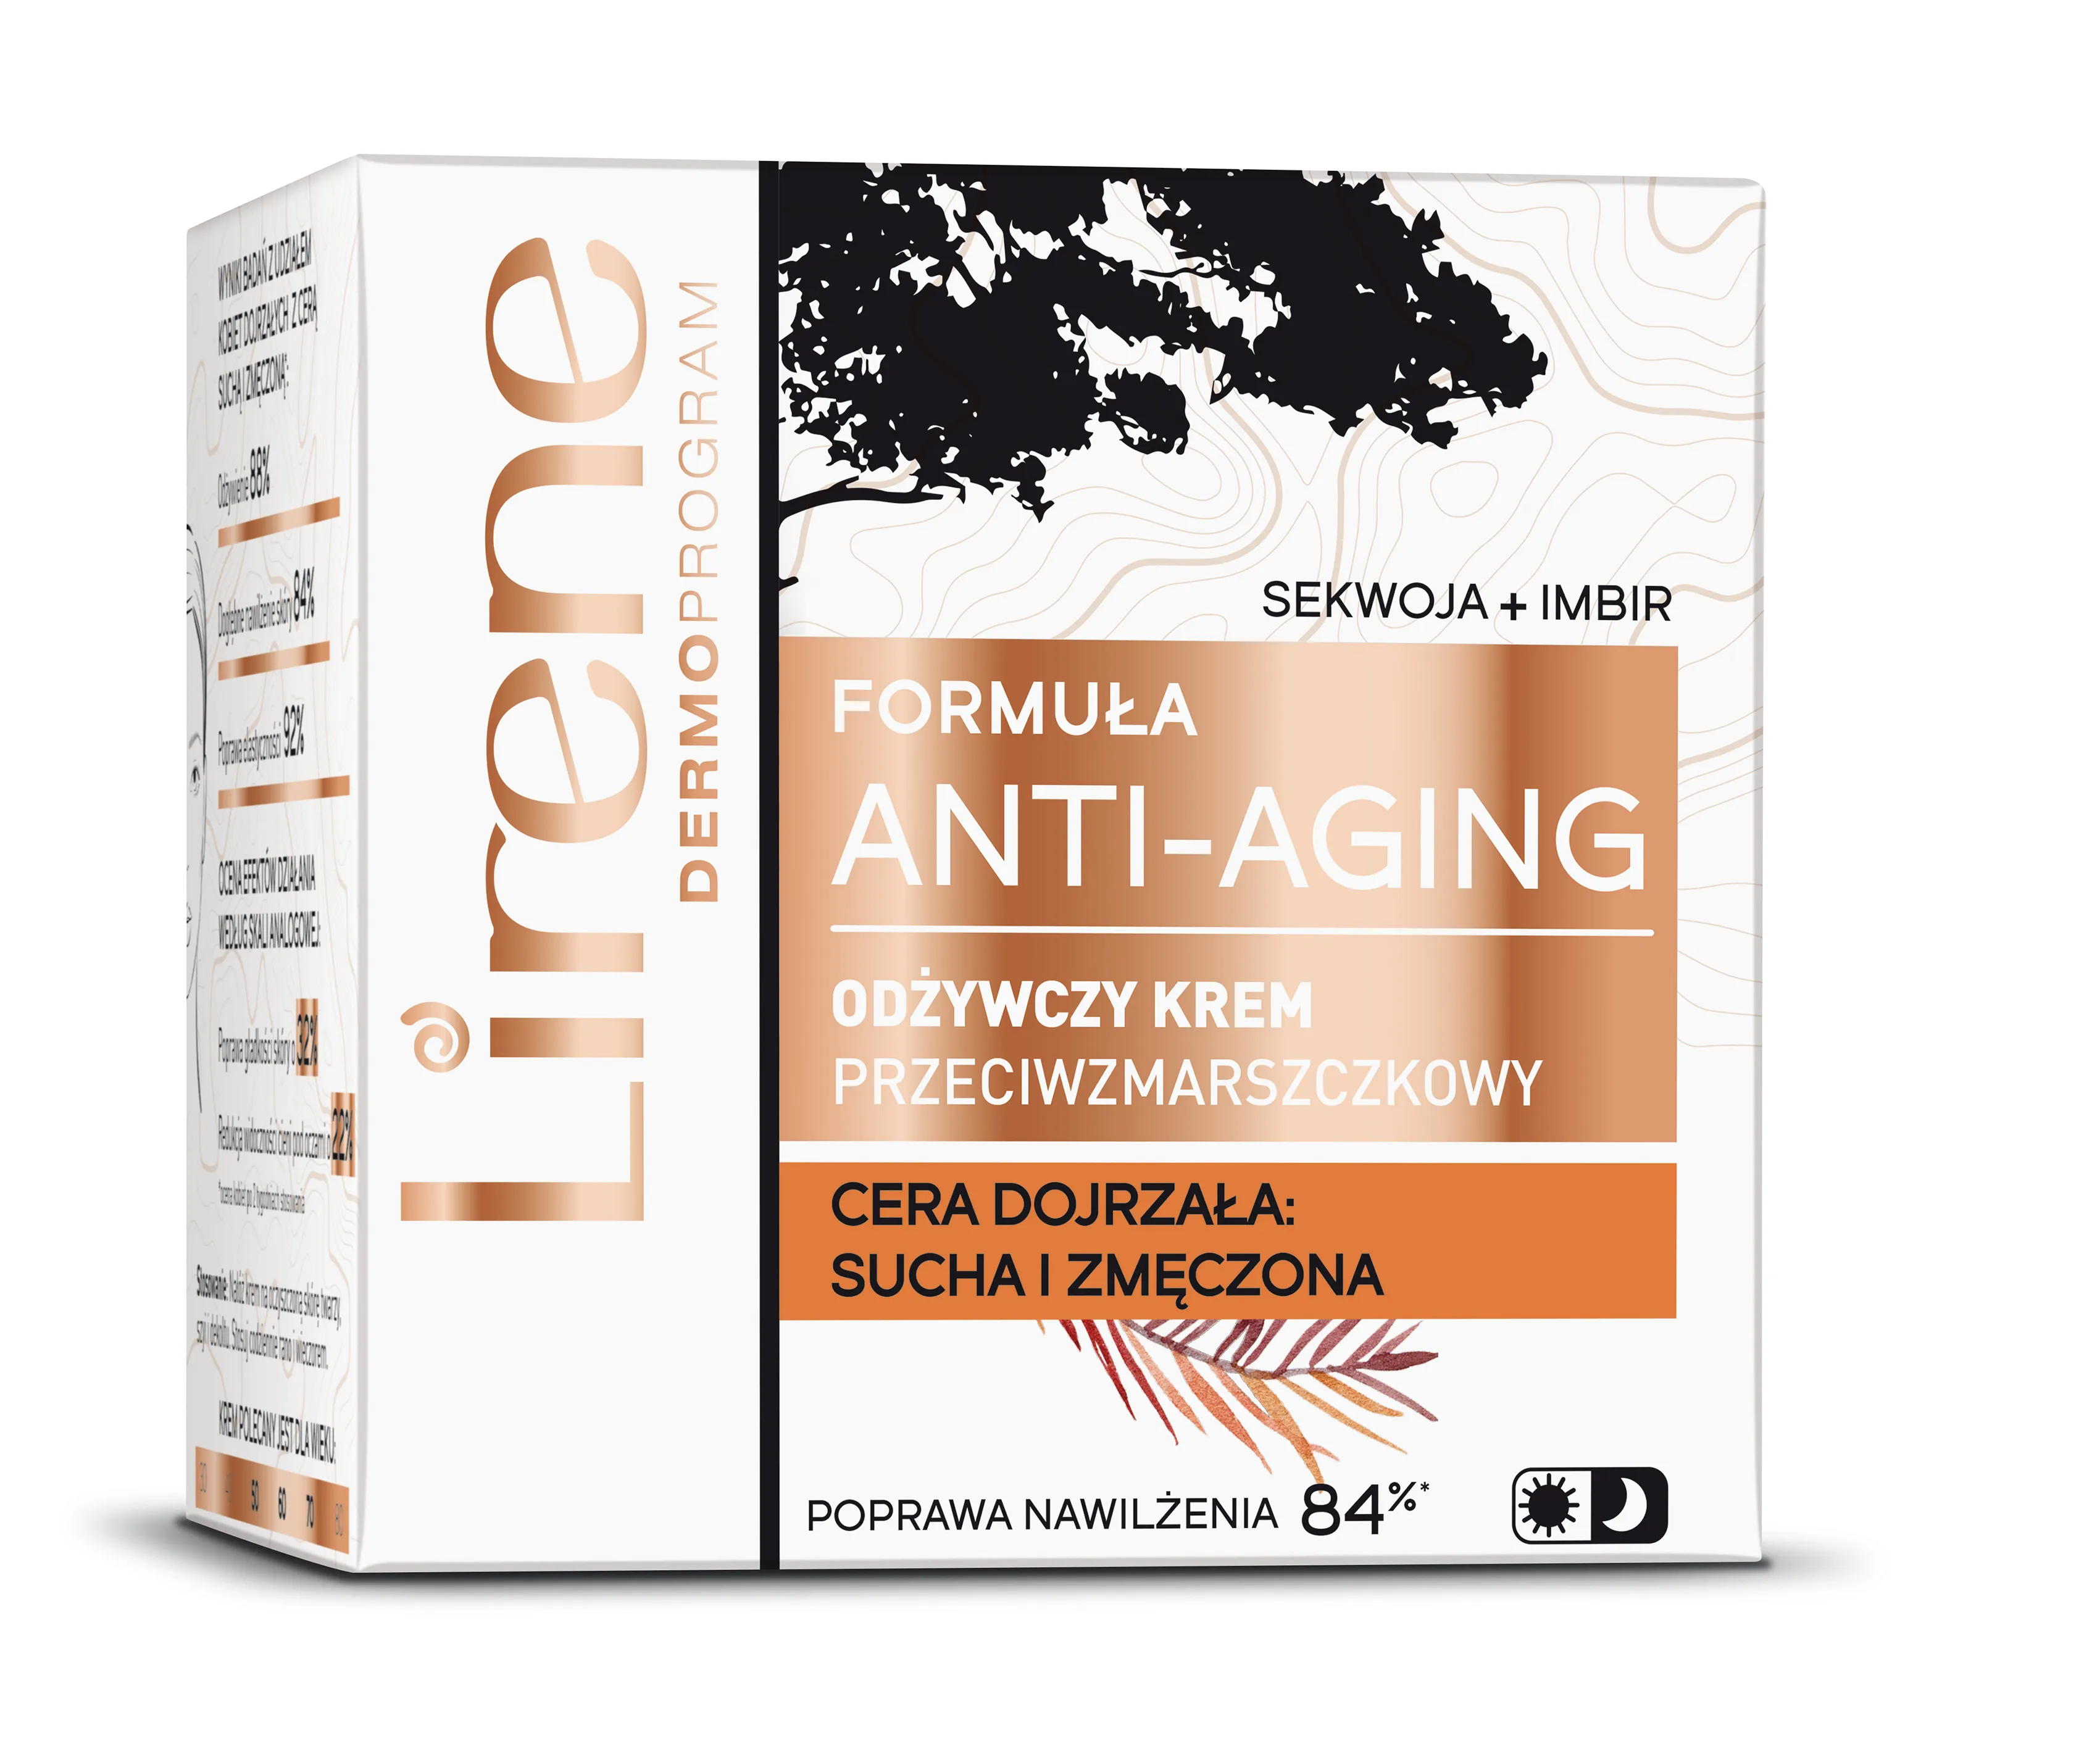 Lirene Formuła Anti-Aging Odżywczy krem do twarzy przeciwzmarszczkowy Sekwoja & Imbir, 50 ml